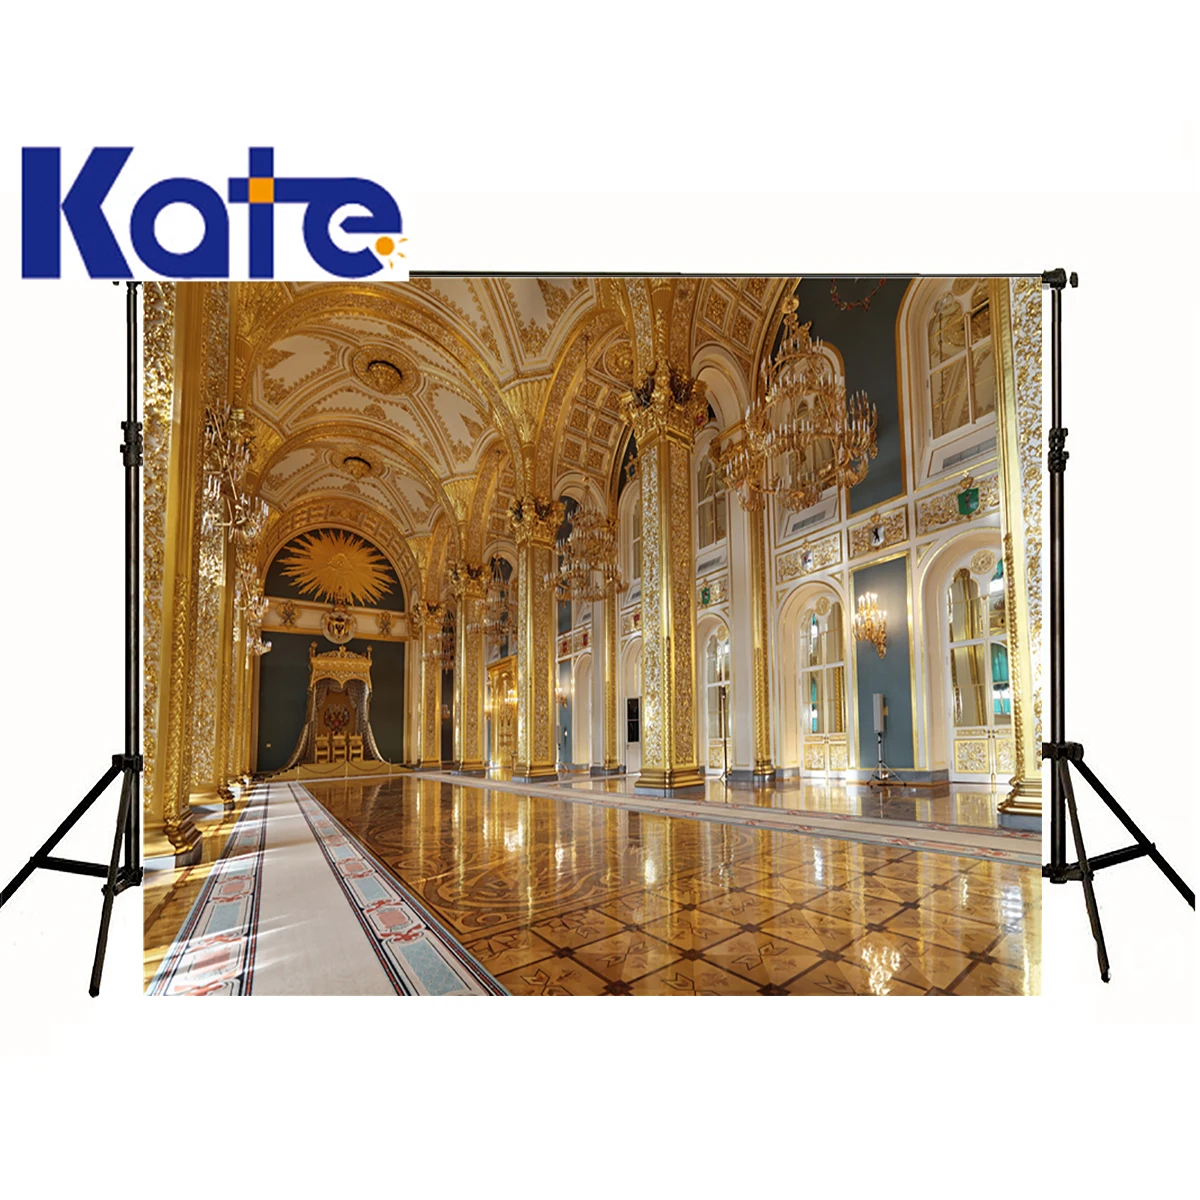 Kate фотографический фон Европейская архитектурная силикация Золотой дворец студия digitalbackdrops Мальчик Свадьба 8x8